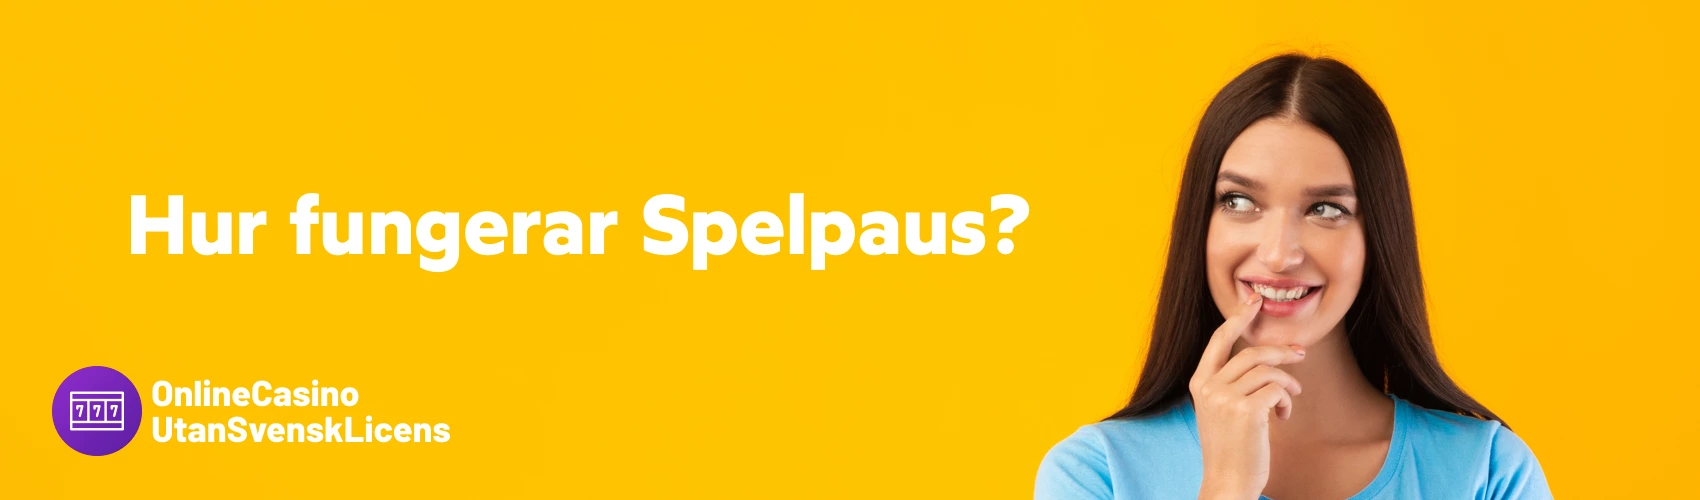 Hur fungerar Spelpaus? - Casino utan svensk licens